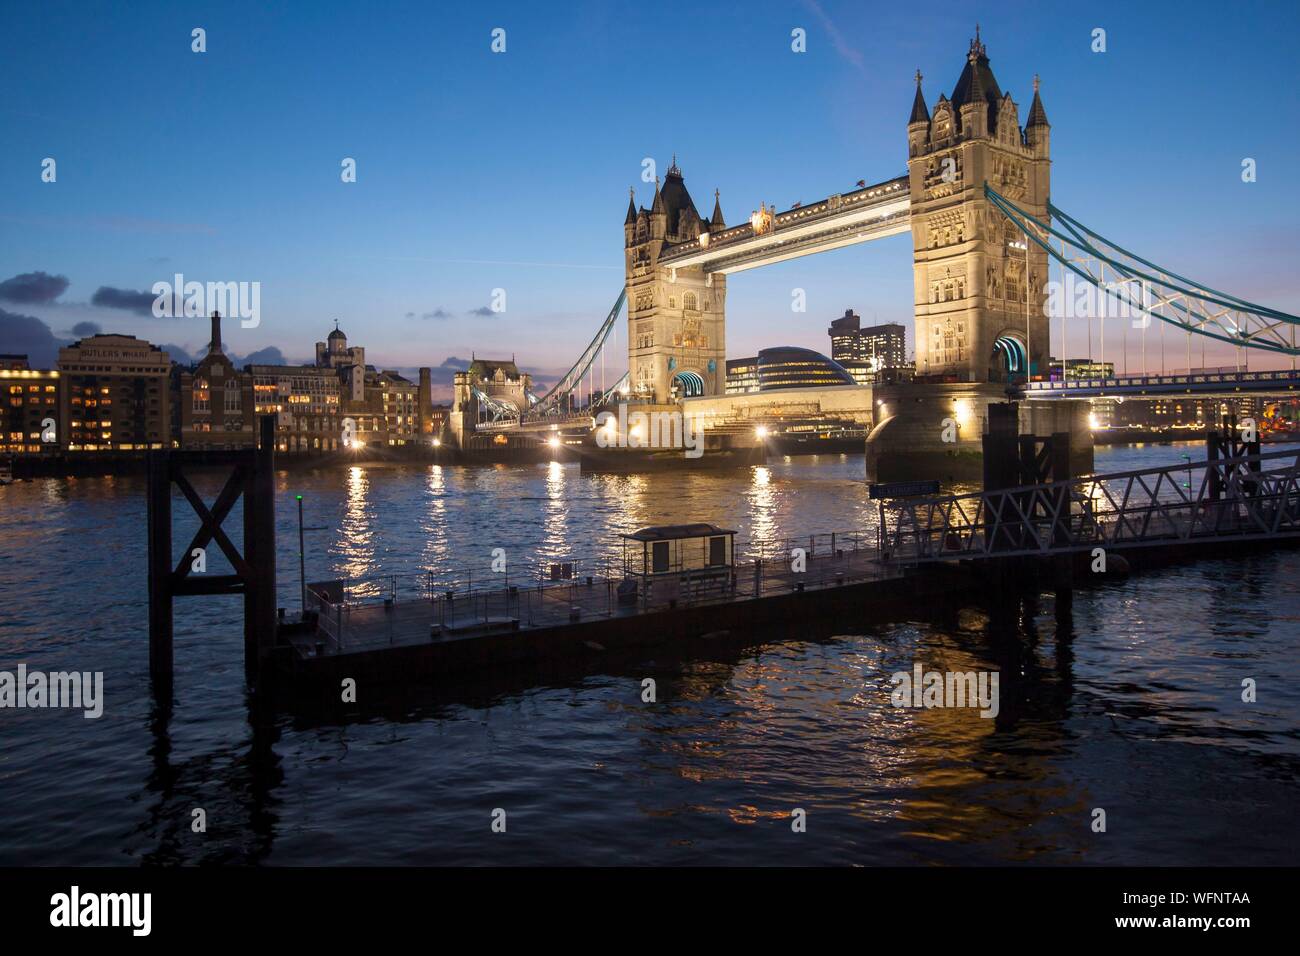 Regno Unito, Inghilterra, Londra, illuminato il Tower Bridge, vista notturna del ponte mobile che attraversa il fiume Tamigi, tra Southwark e Tower Hamlets distretti Foto Stock